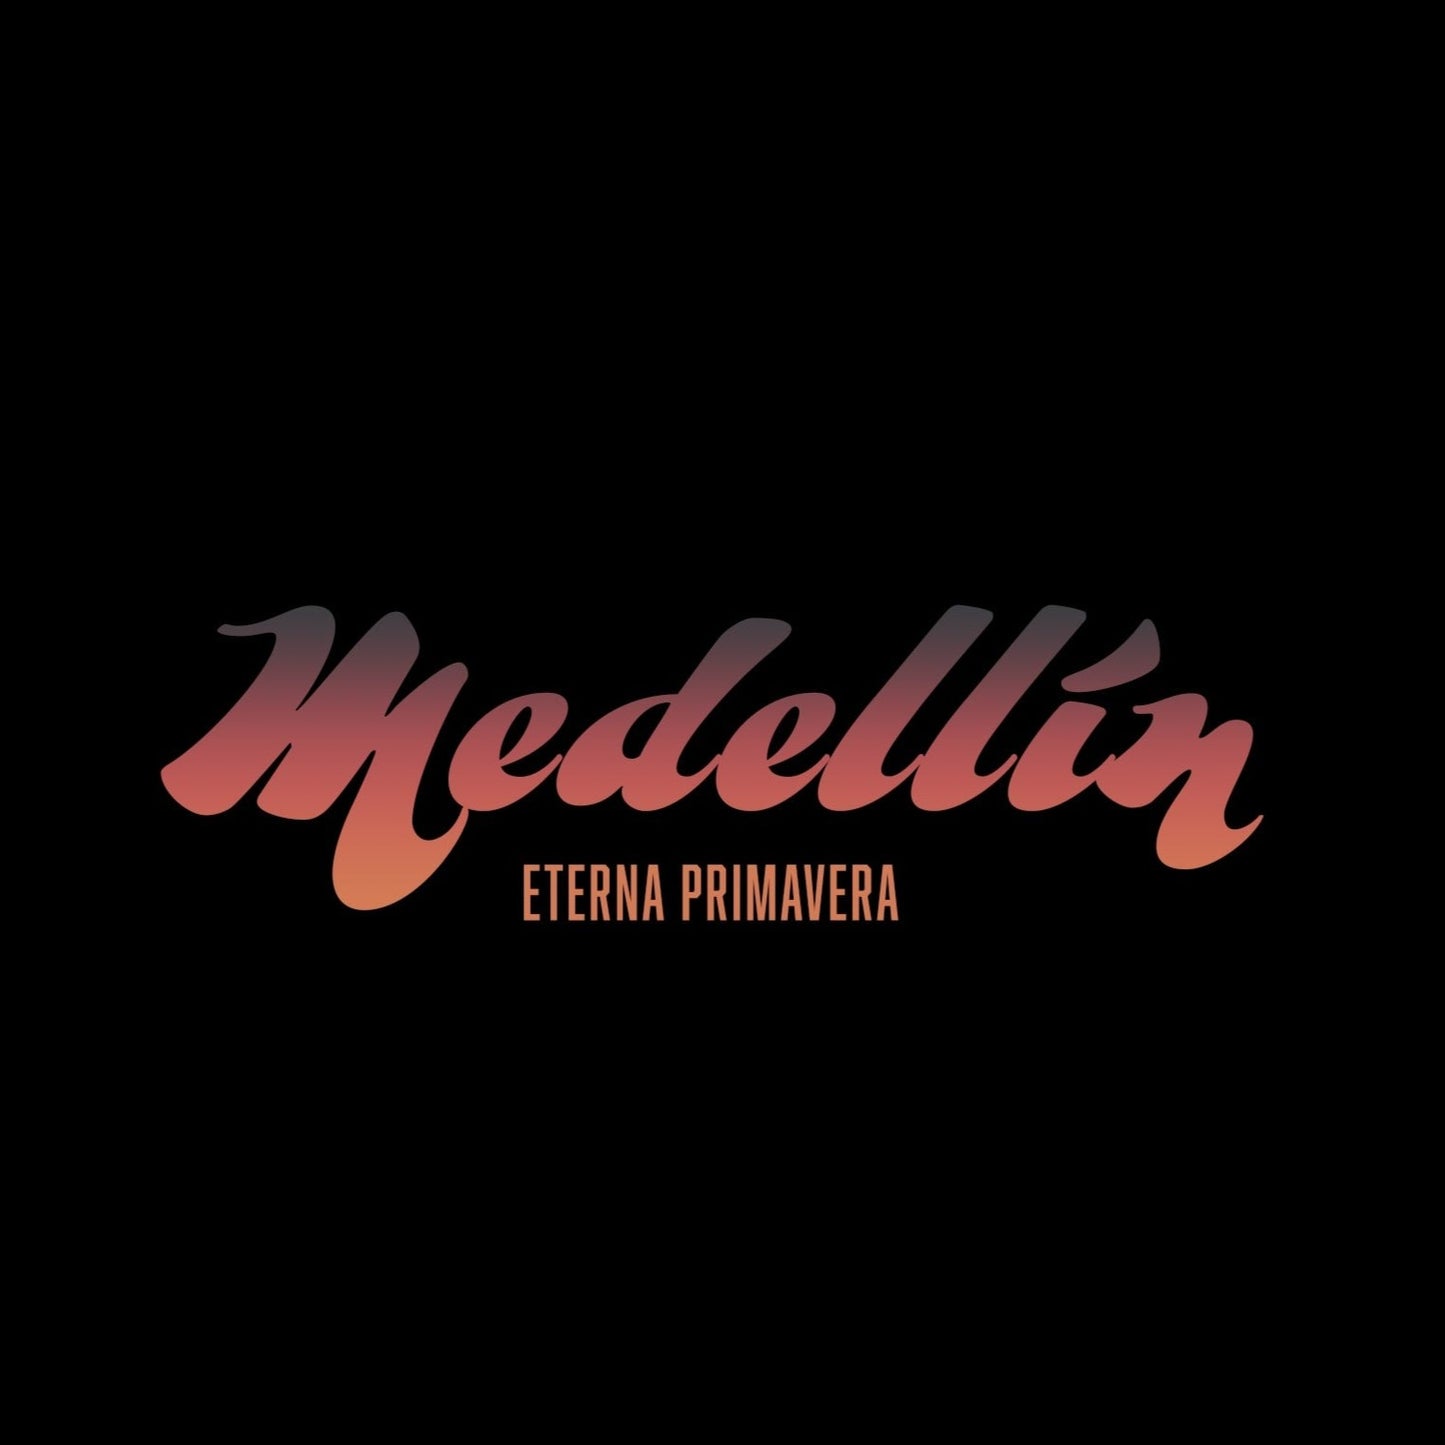 🇨🇴 Medellin Enter Primavera Sweatshirt